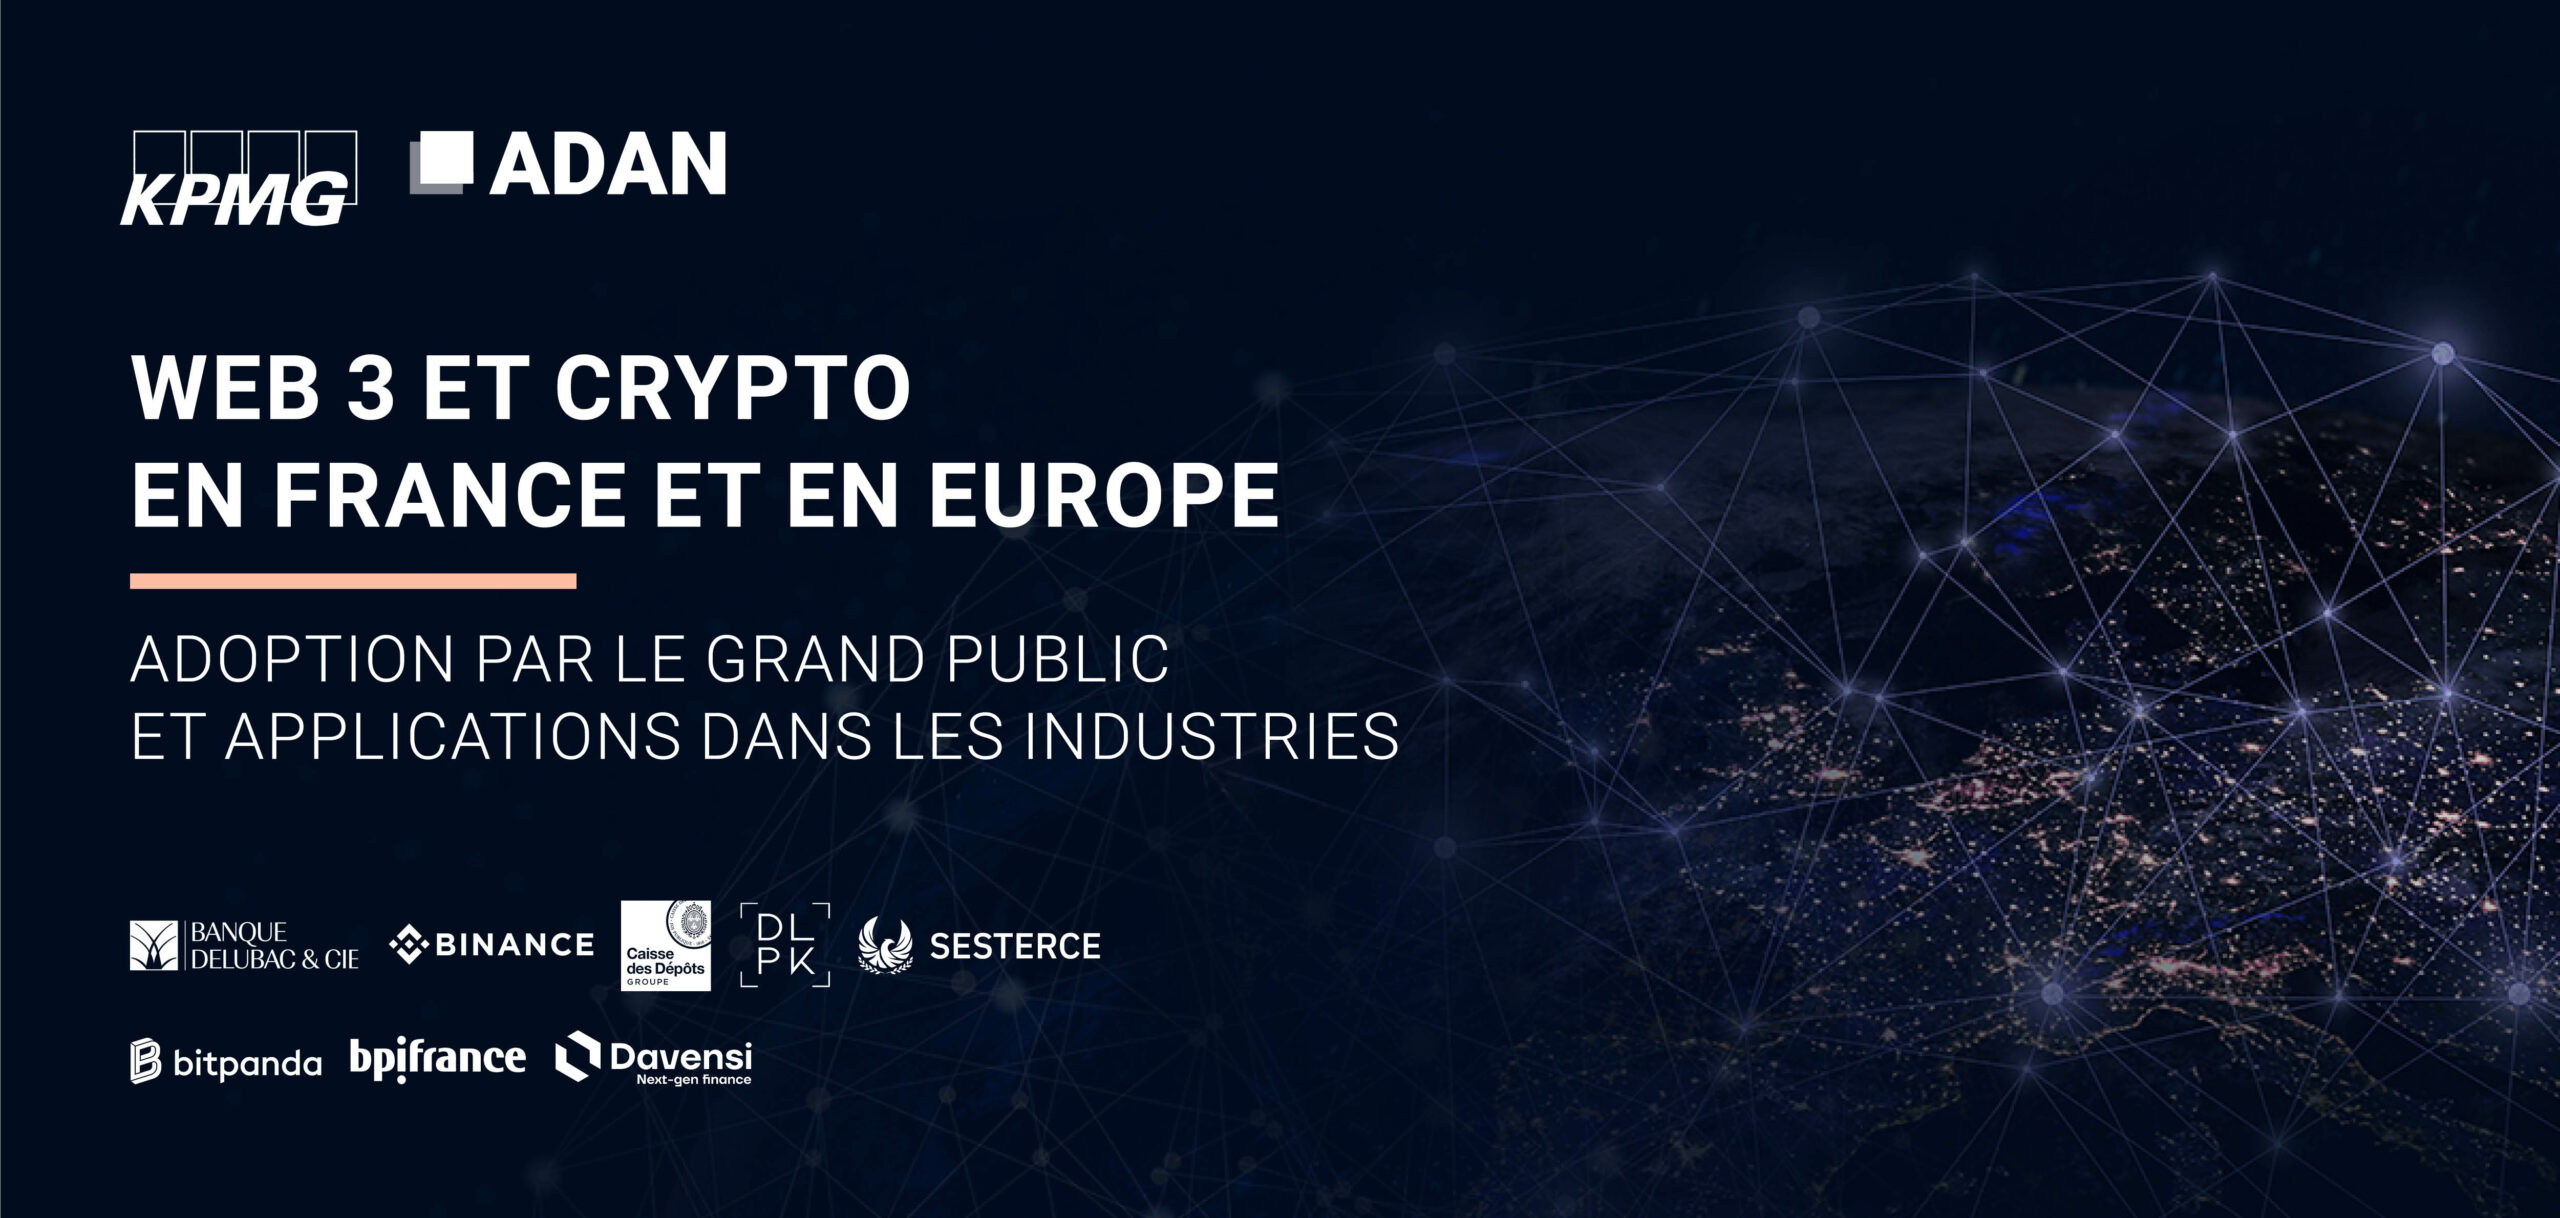 Web3 et Crypto en France et en Europe : Adoption par le grand public et applications par les industries